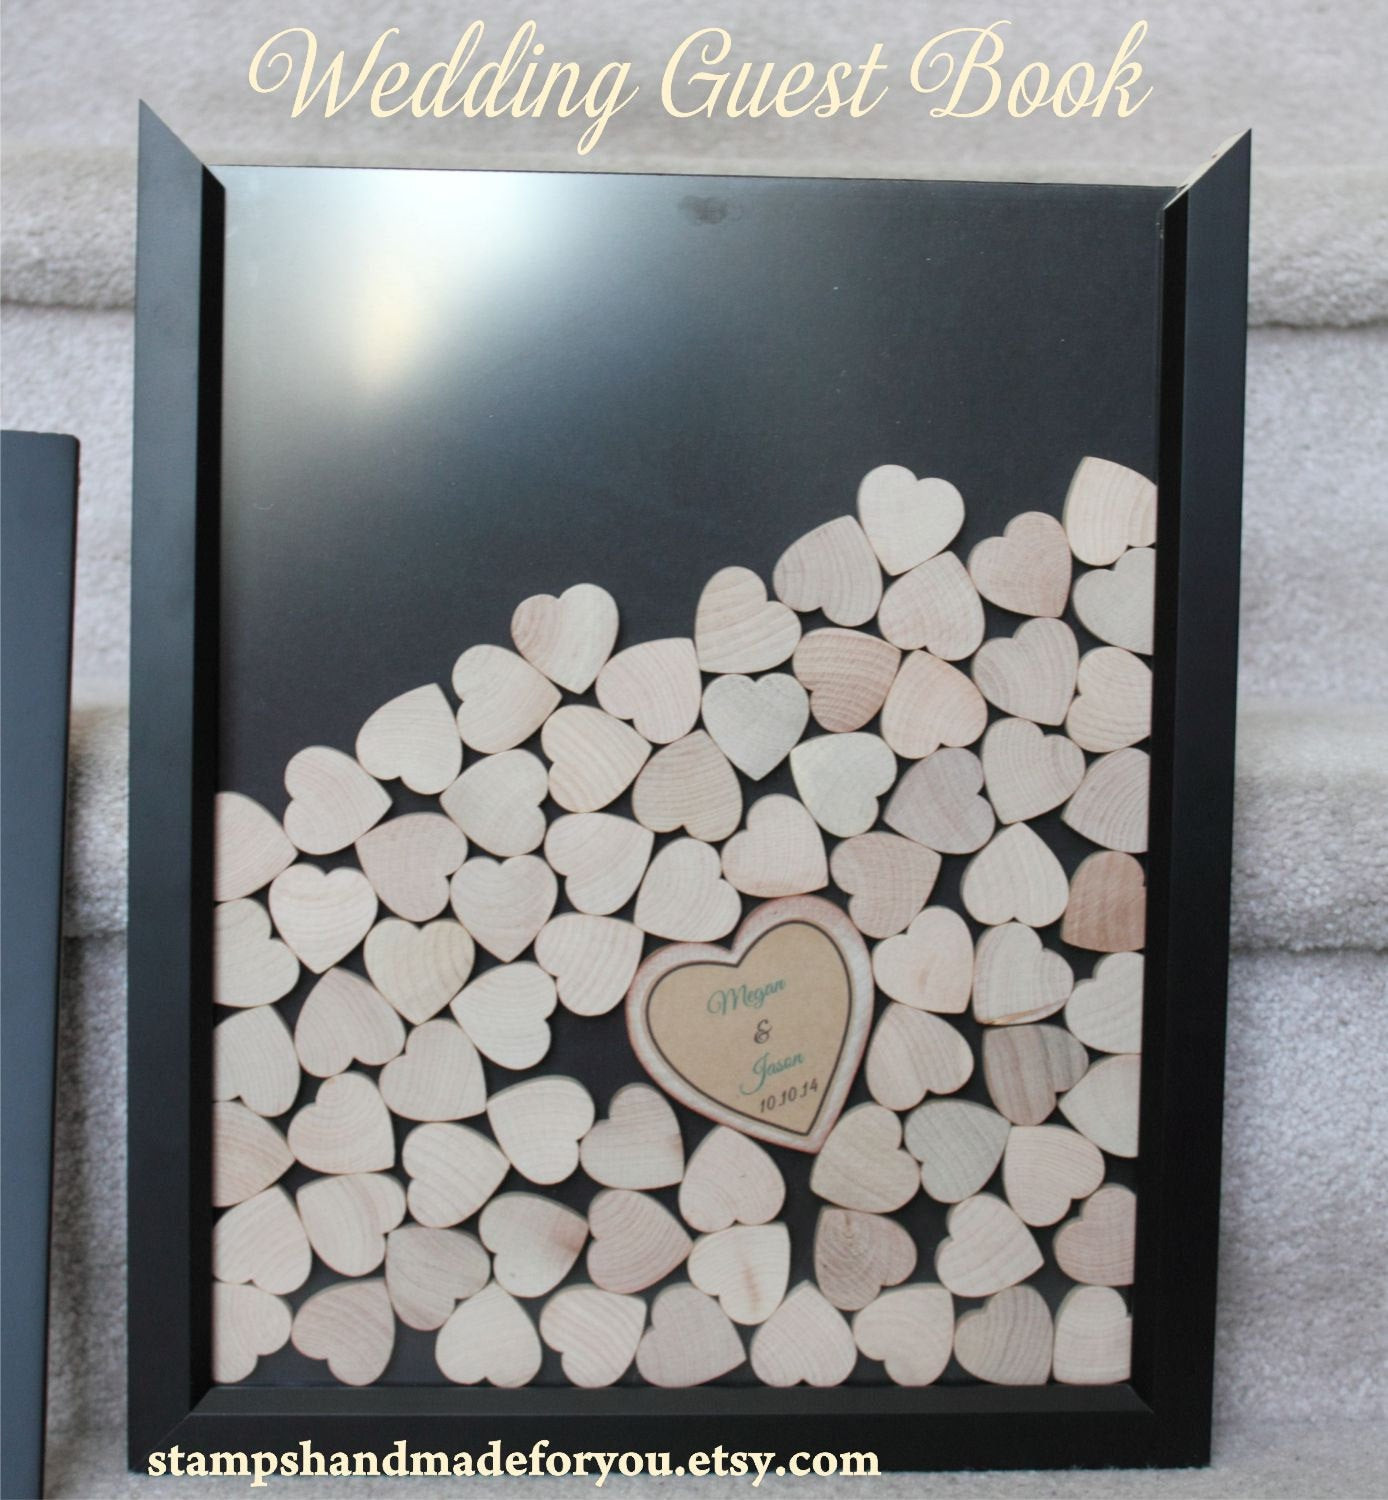 Frame Guest Book Wedding
 Drop box guest book heart frame wedding guest by